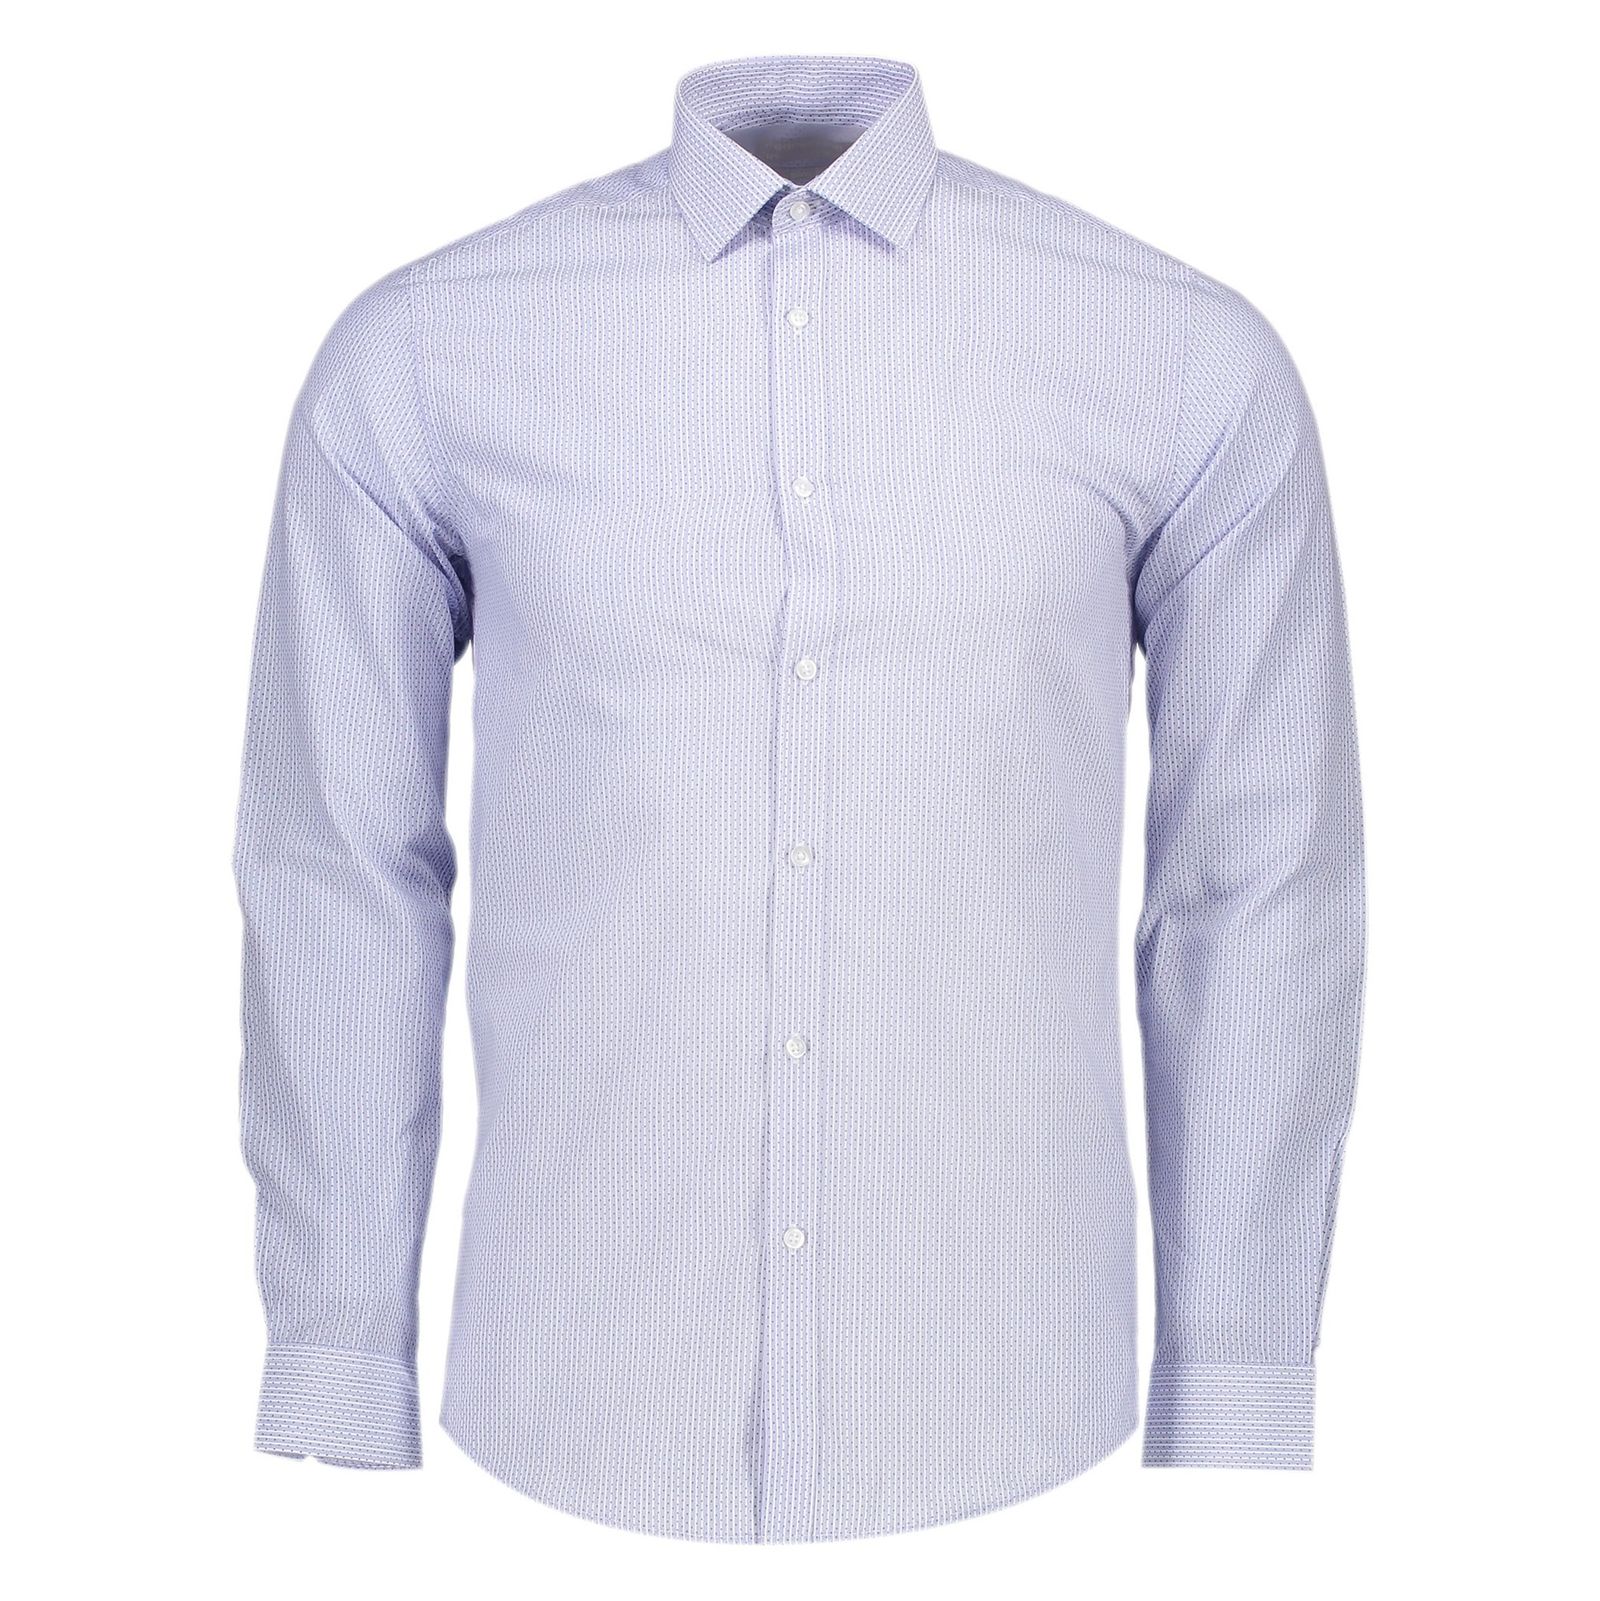 پیراهن رسمی مردانه - رد هرینگ - آبي روشن - 1